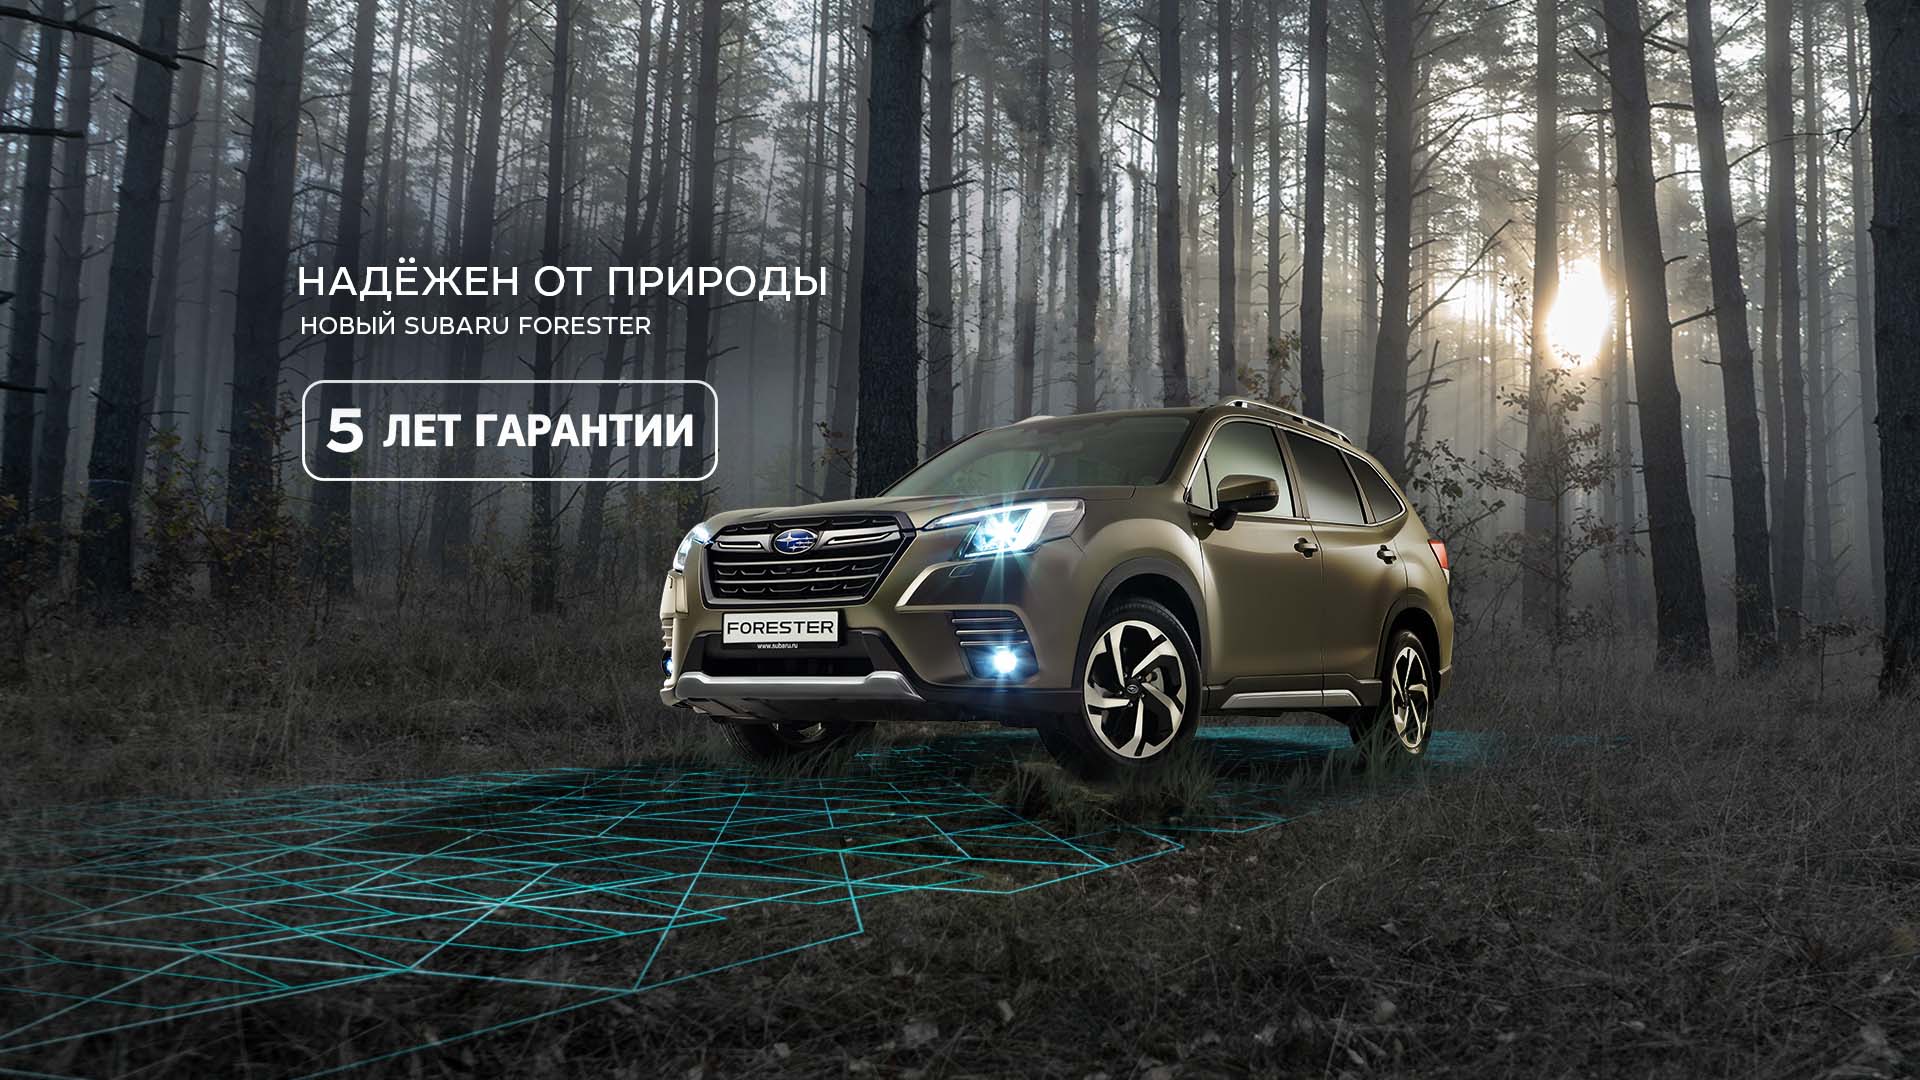 Мэйджор Авто Рига — сайт официального дилера Subaru в г. Москва | Subaru  Russia